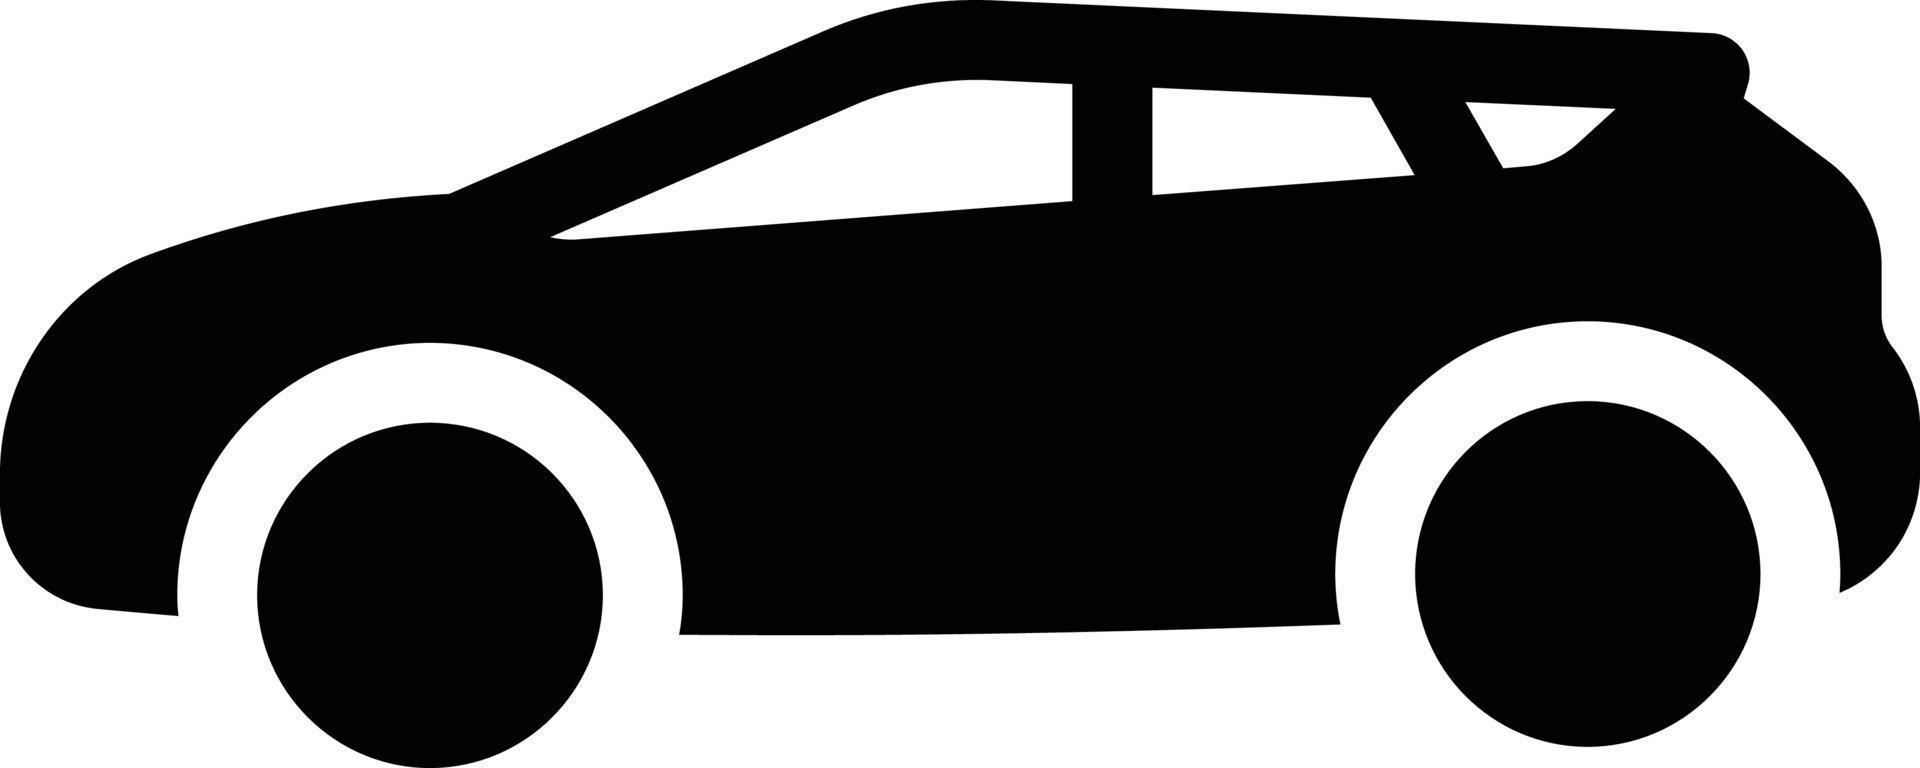 illustrazione vettoriale del carro su uno sfondo. simboli di qualità premium. icone vettoriali per il concetto e la progettazione grafica.